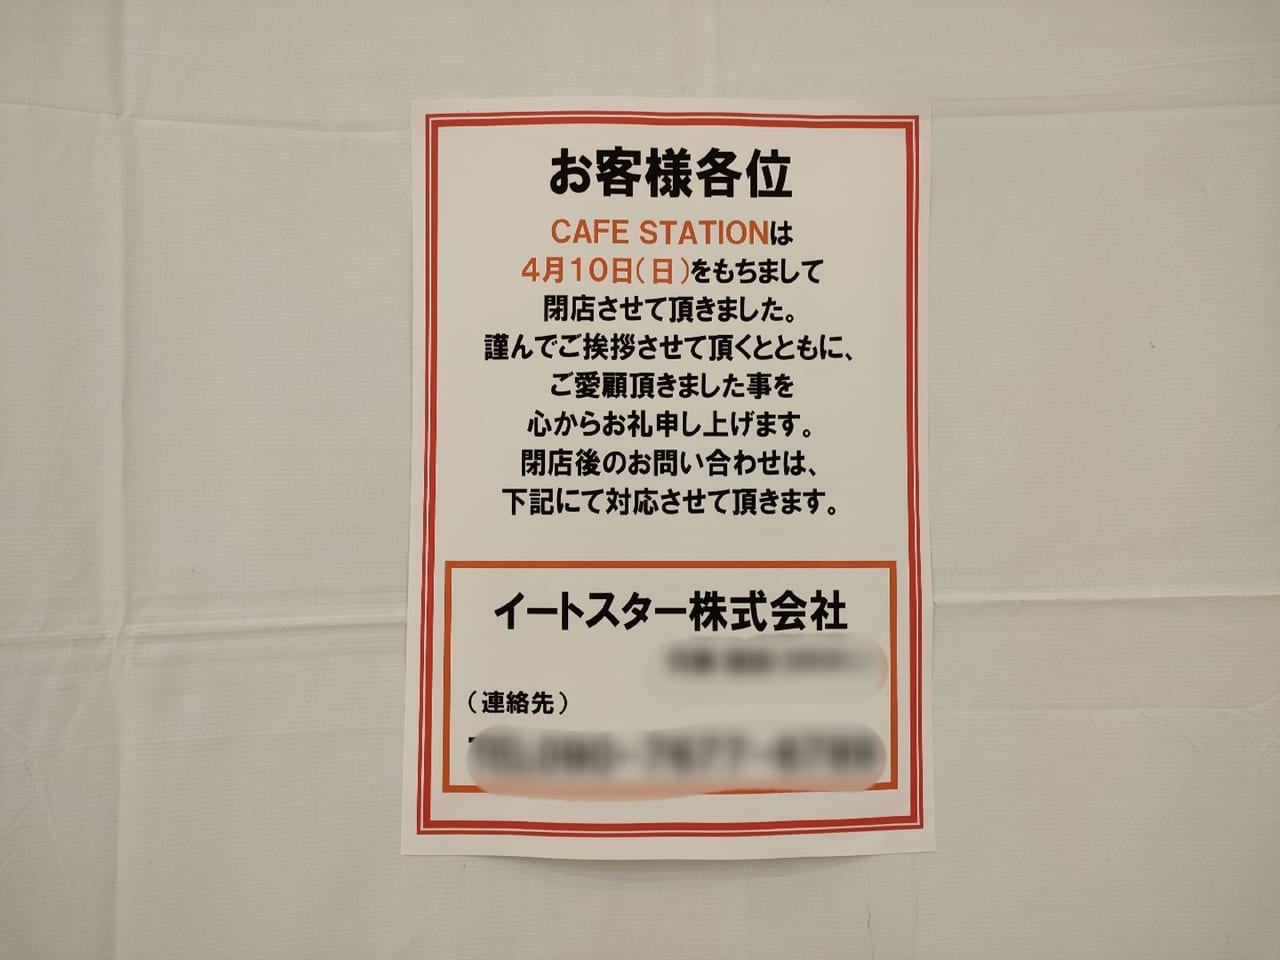 OSC湘南シティにあった「CAFE STATION」が閉店しました。